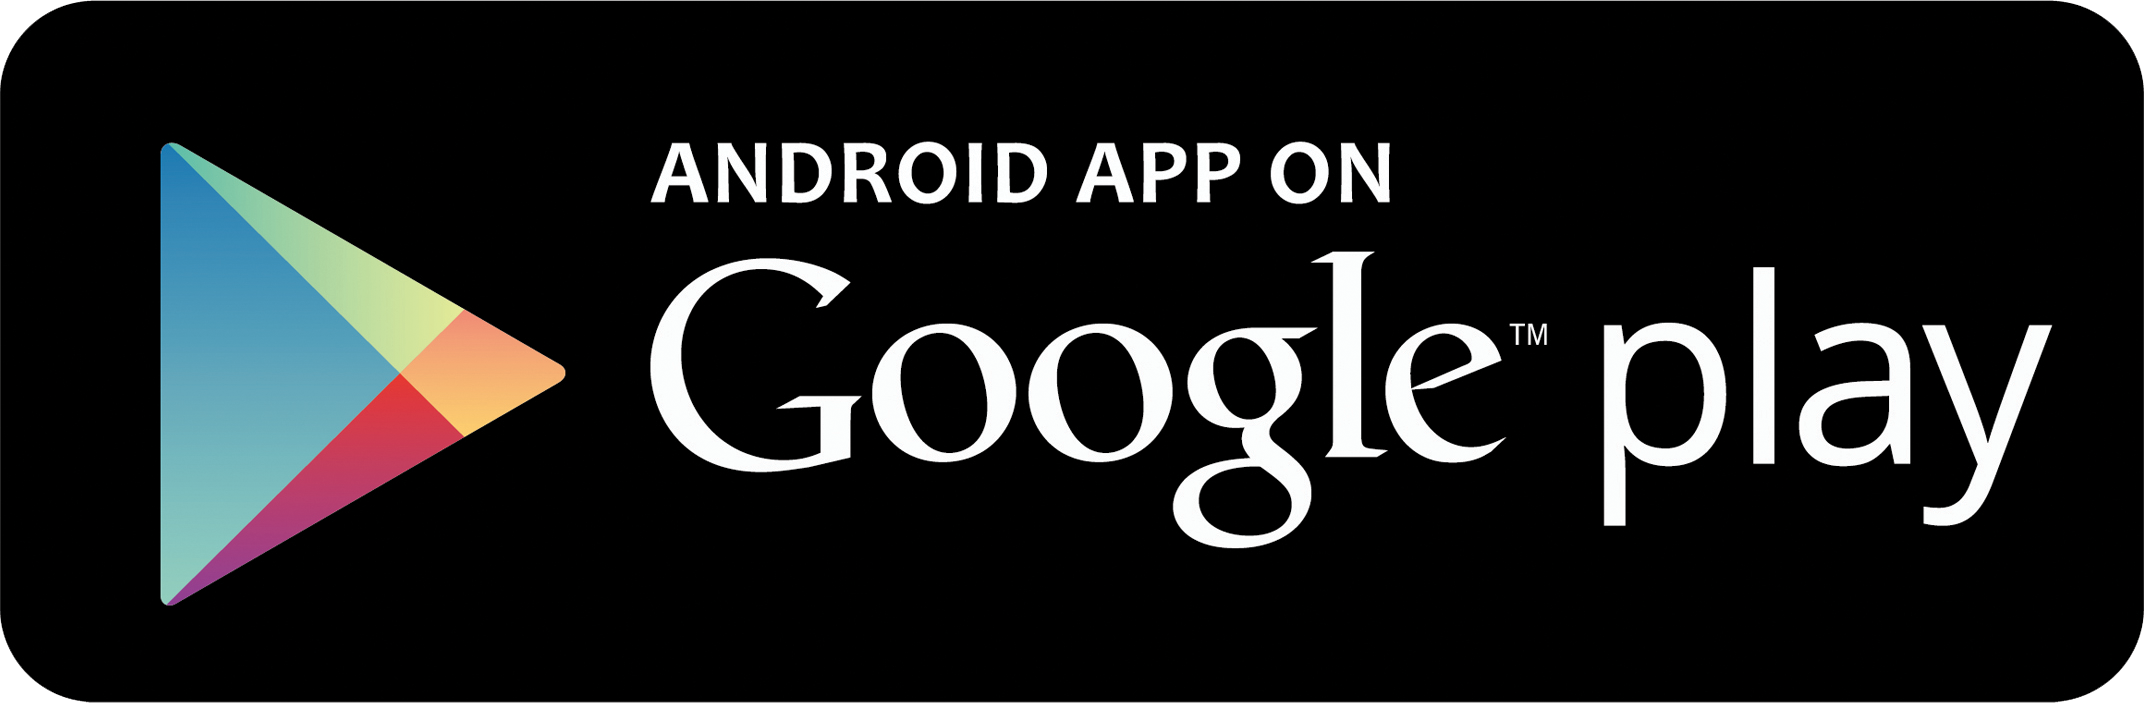 Google Play Store Button - Text 2 Floss